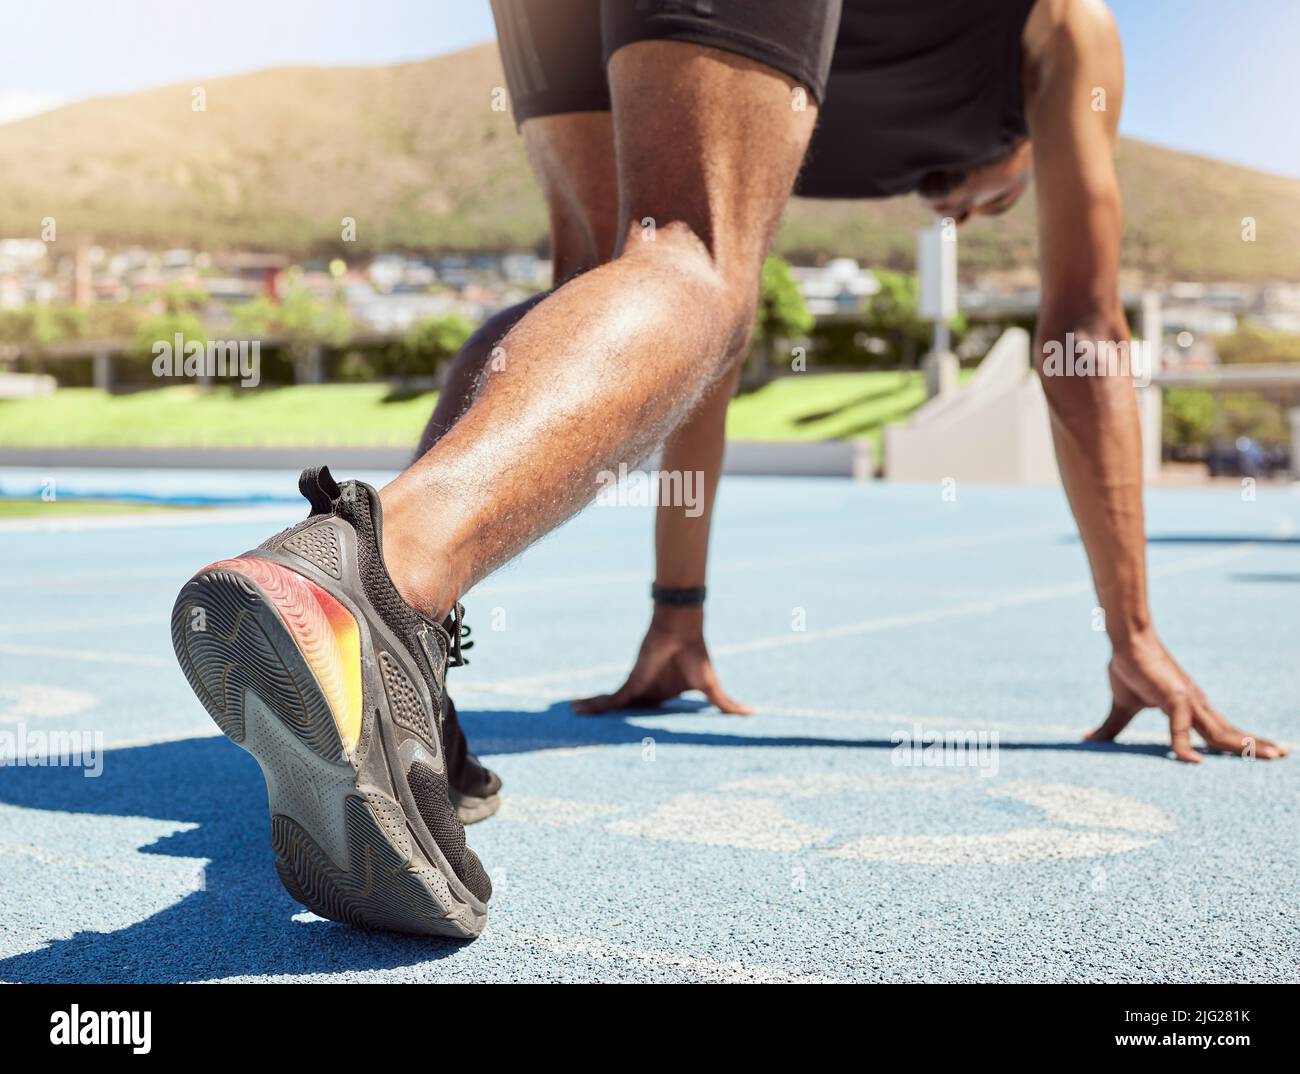 Nahaufnahme eines Sportlers, der sich bereit für das Laufen auf Kurs und Feld gemacht hat, mit seinen Füßen auf Startblöcken, die bereit sind, mit dem Sprinten zu beginnen. Nahaufnahme eines Mannes beim Start Stockfoto